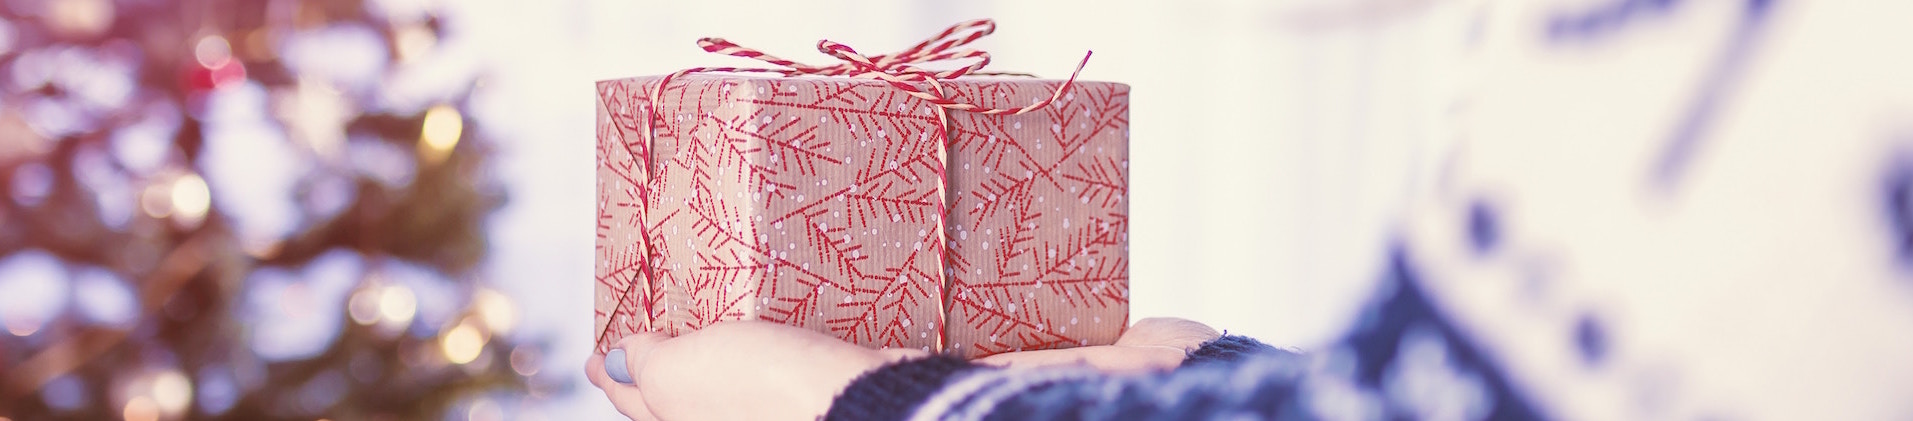 Julegaver = stress og overtræk? Her er  8 tips til gave-aftaler, der kan redde julefreden